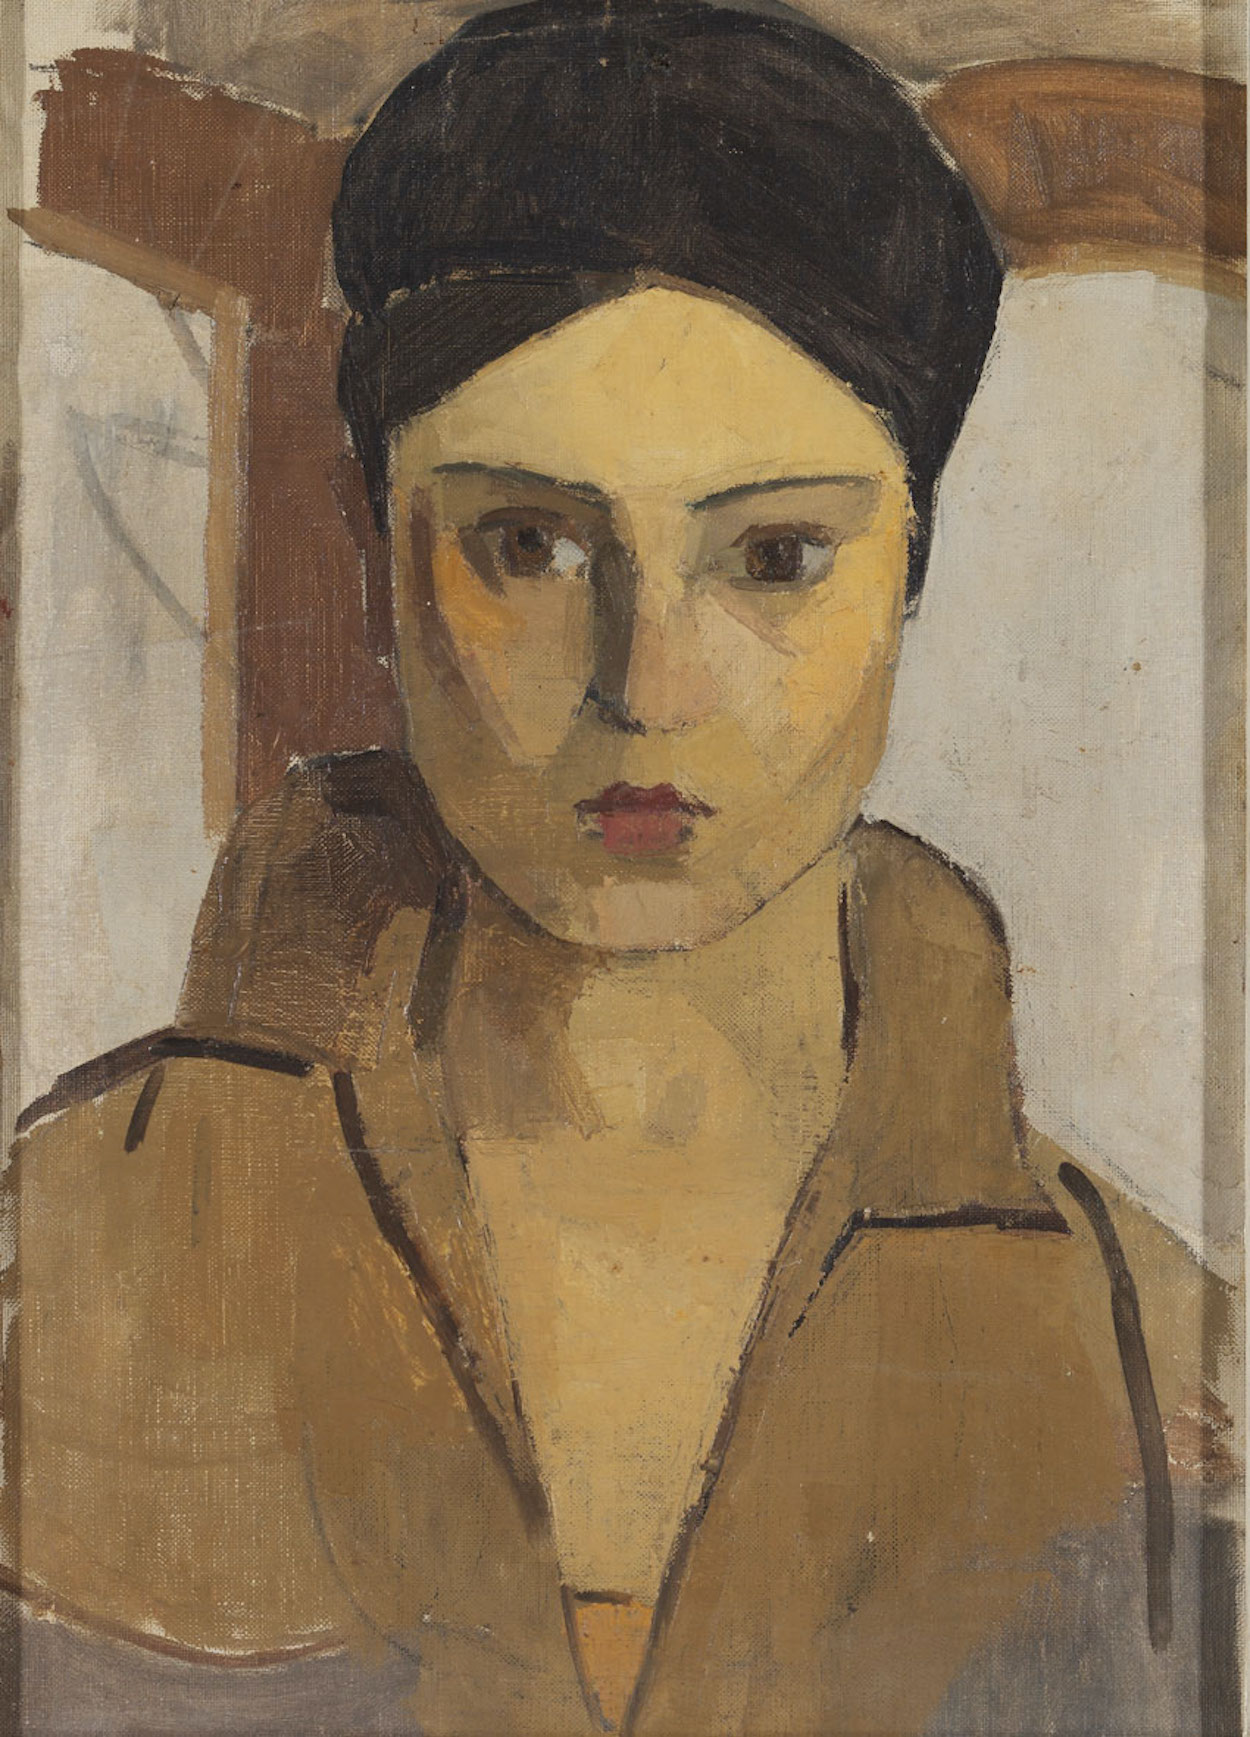 Autorretrato by Hale Asaf - década de 1920 - 90 x 72 cm coleção privada